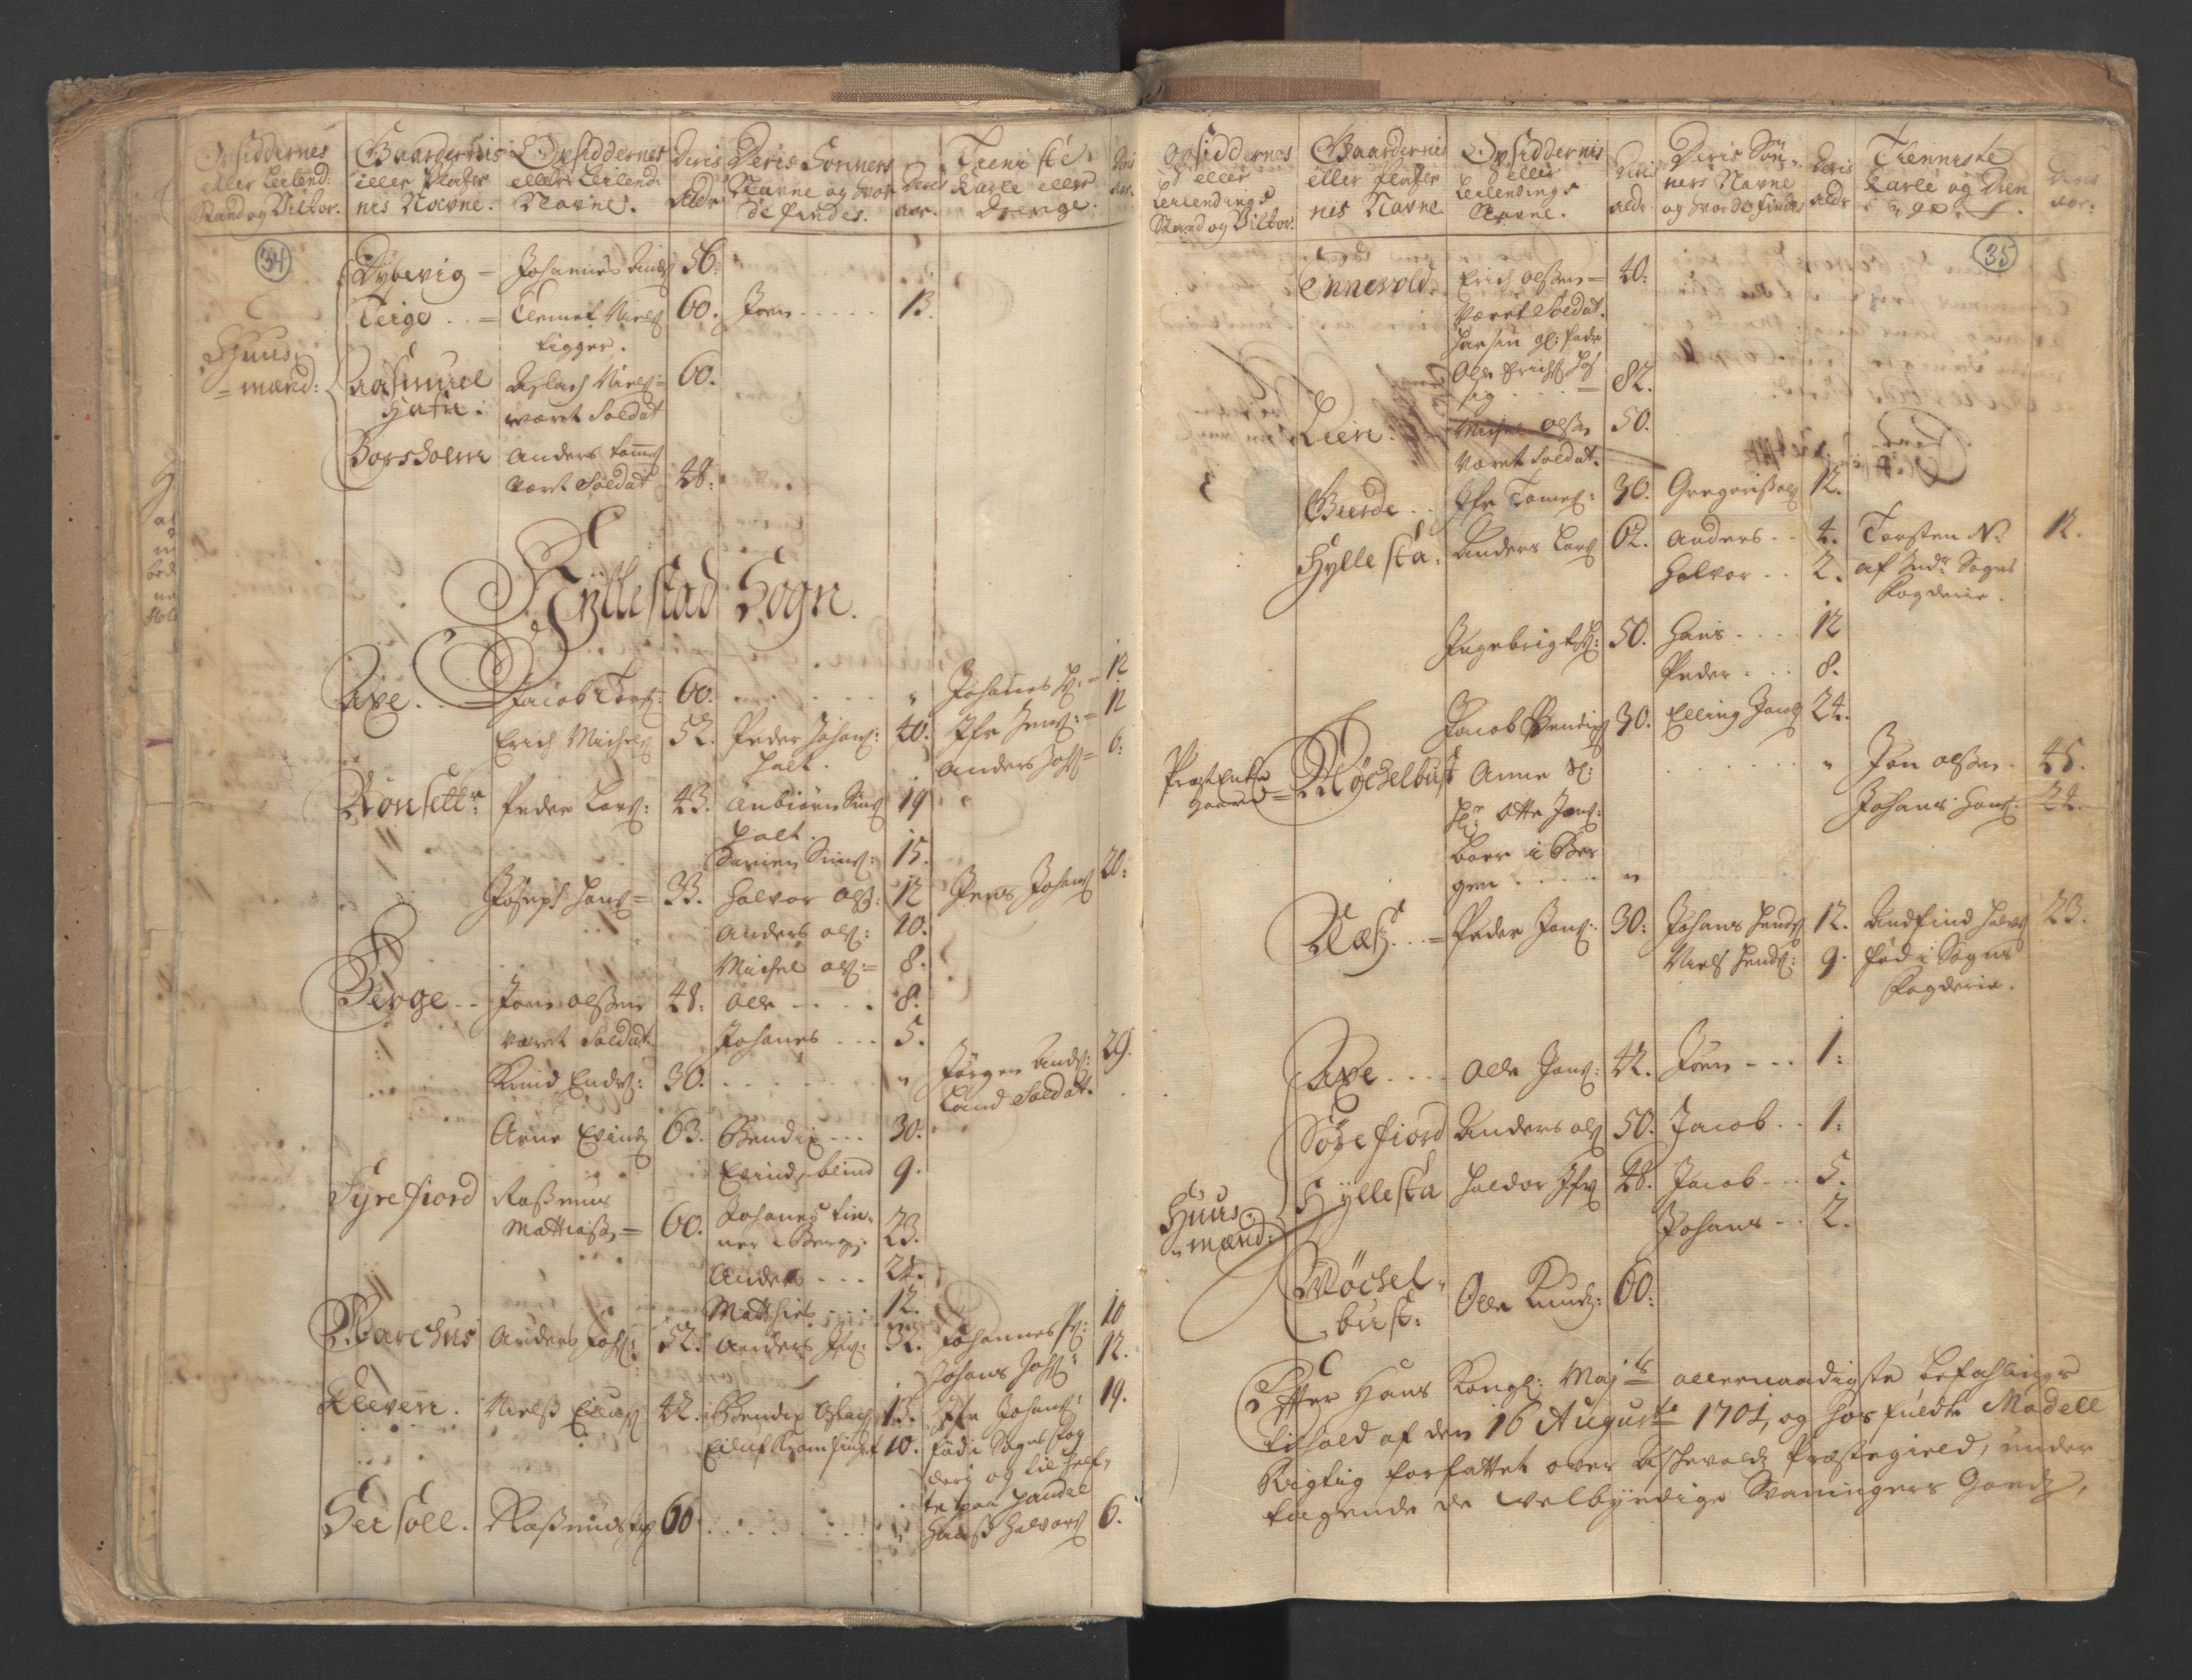 RA, Census (manntall) 1701, no. 9: Sunnfjord fogderi, Nordfjord fogderi and Svanø birk, 1701, p. 34-35